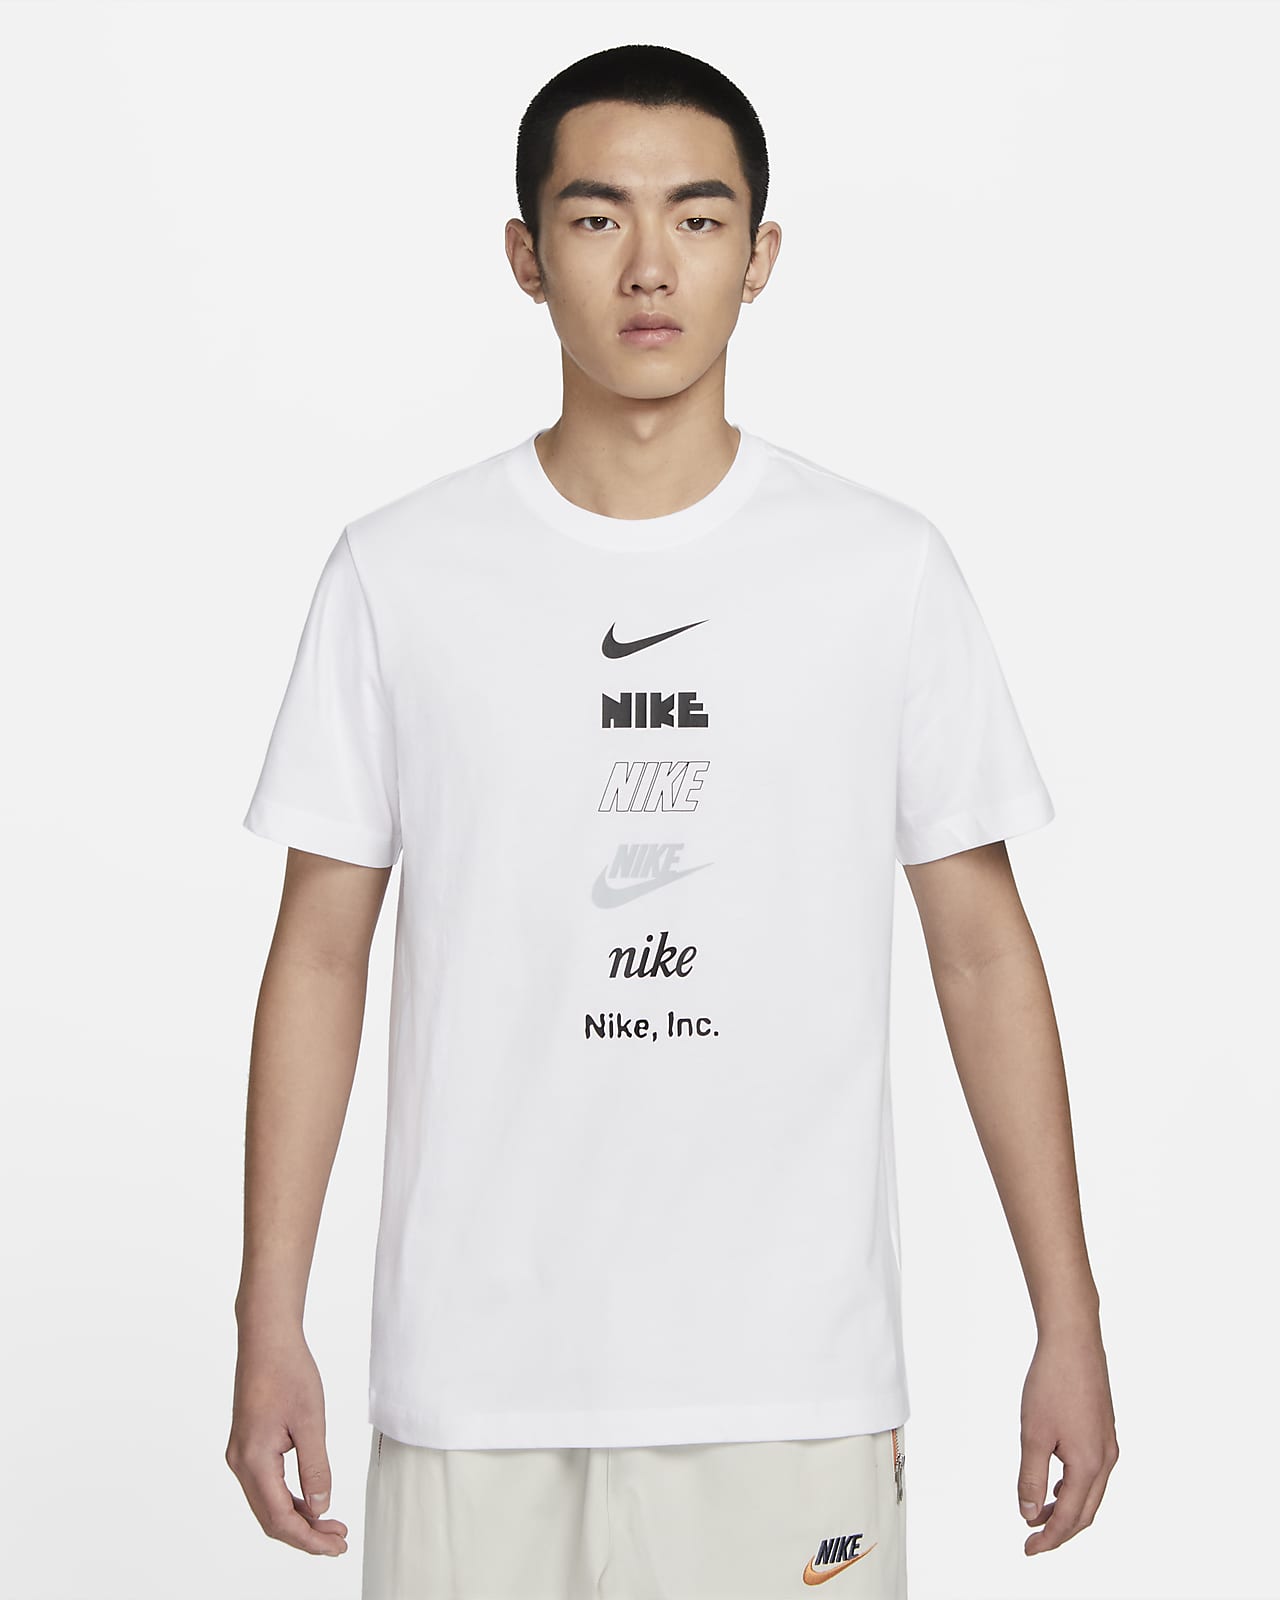 Ingenieurs Verplicht toewijding Nike Sportswear Men's T-Shirt. Nike ID